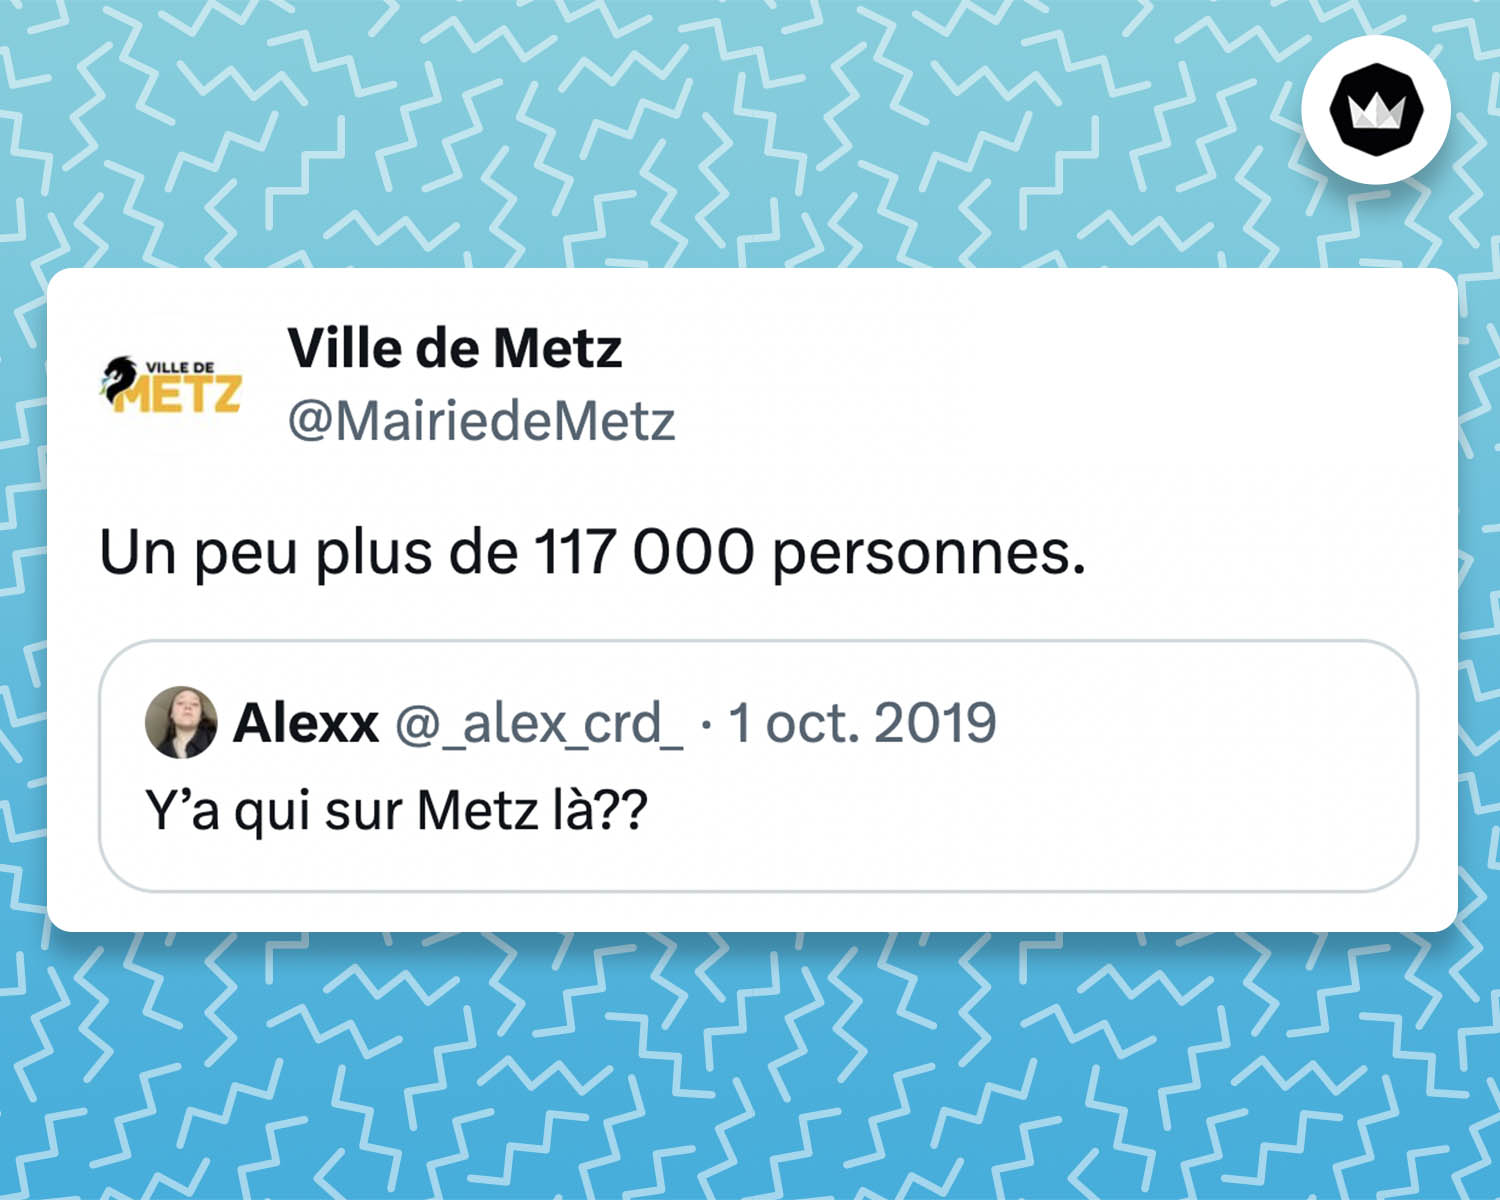 tweet de la Marie de Metz : "Un peu plus de 117 000 personnes" Il s'agit d'une réponse au tweet d'un internaute : "Y'a qui sur Metz là ??"